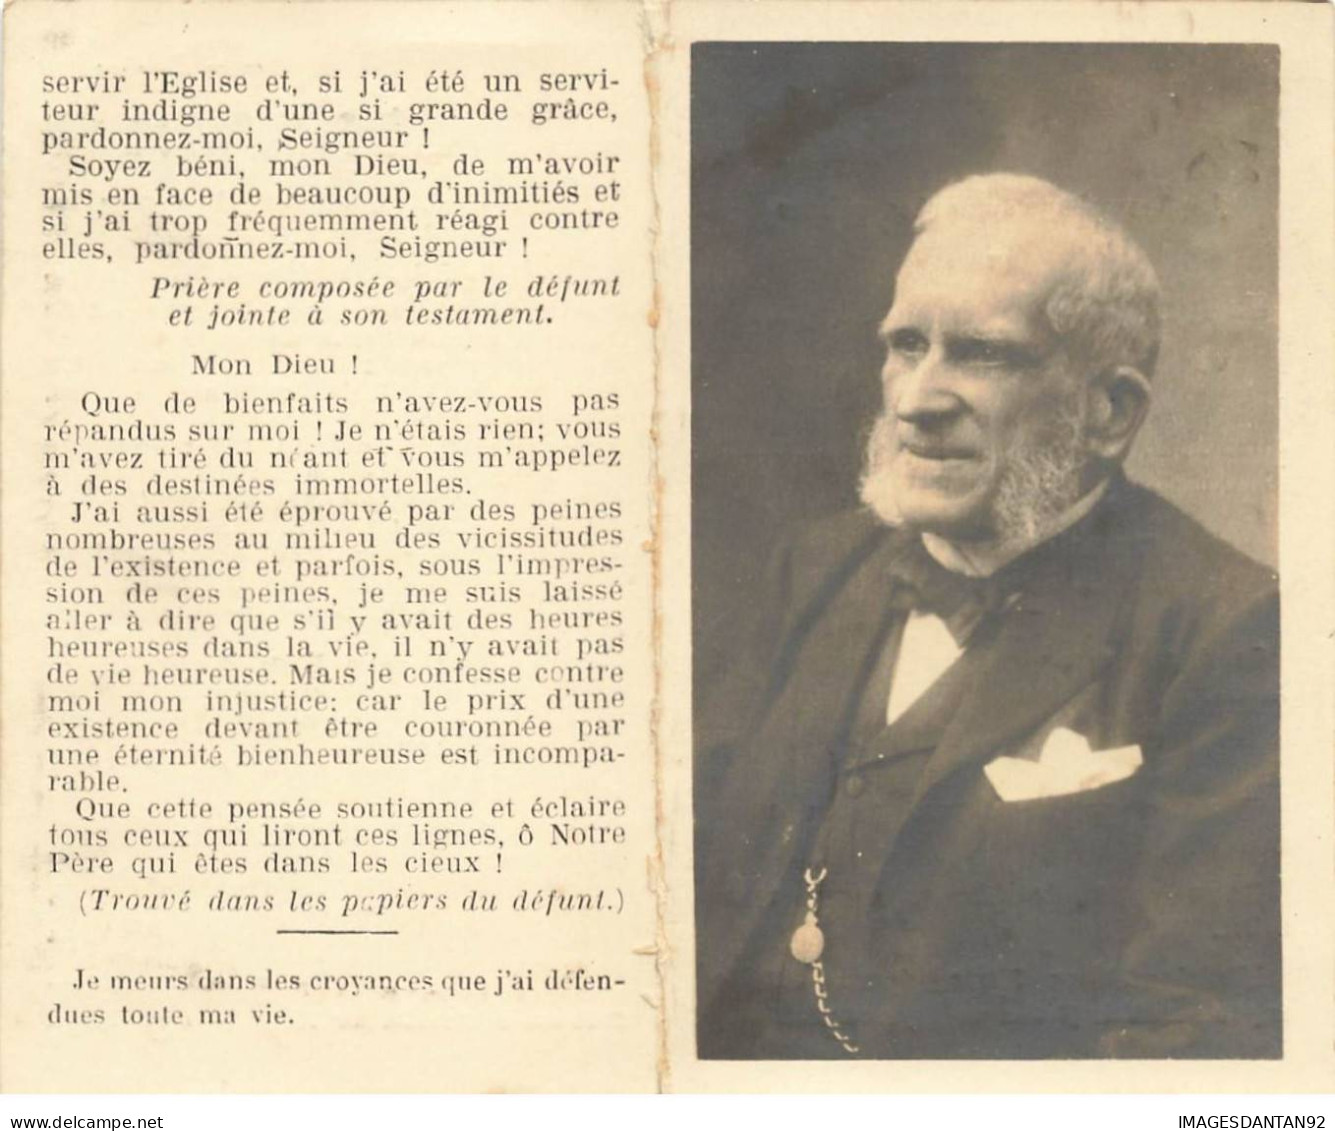 FAIRE PART DECES #FG40198 BELGIQUE BRUXELLES COMTE WOESTE MINISTRE D ETAT - Obituary Notices